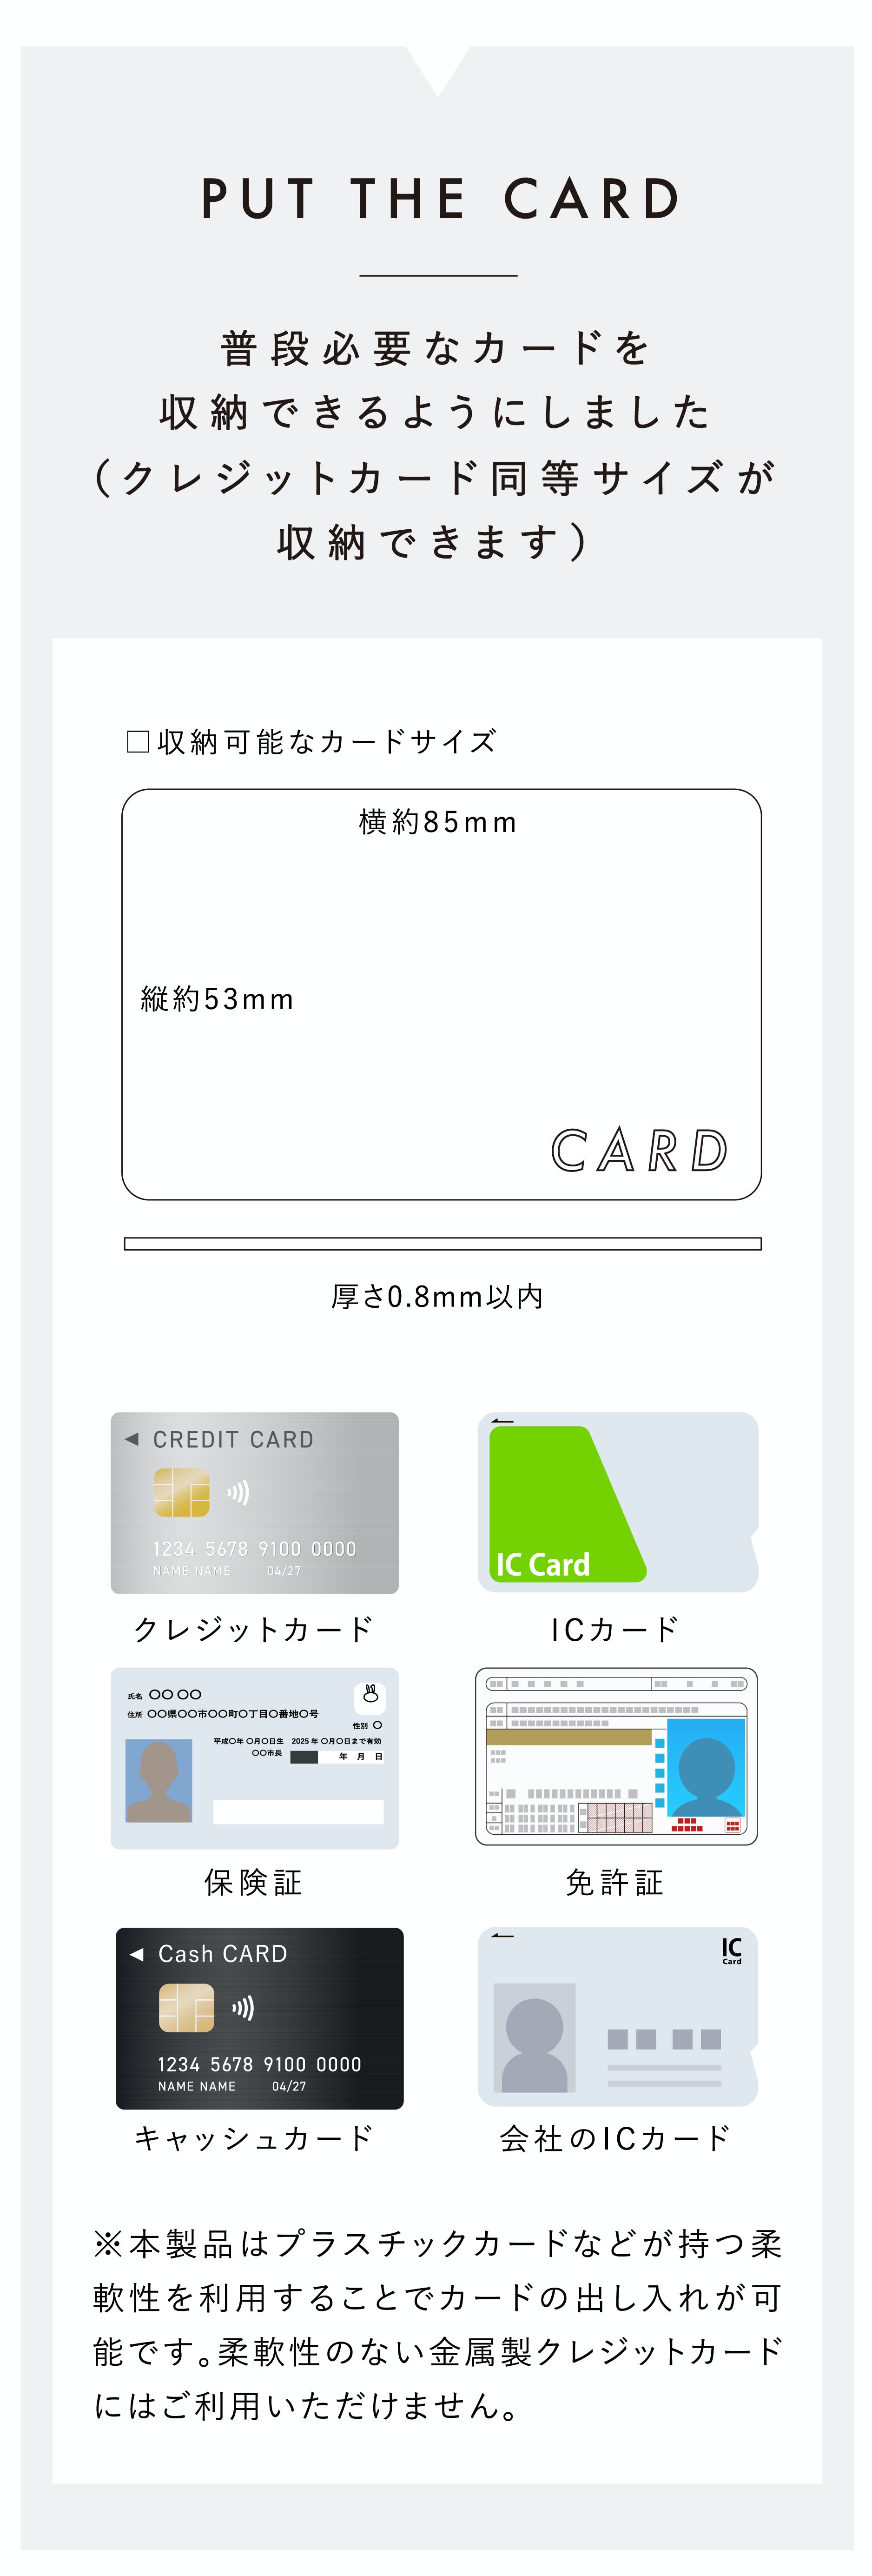 NIUM CLASSIC ニウムクラシック 次世代フレーム型 日本製 アルミ削り出し マネークリップ カードケース マイナンバーカード 免許証 保険証